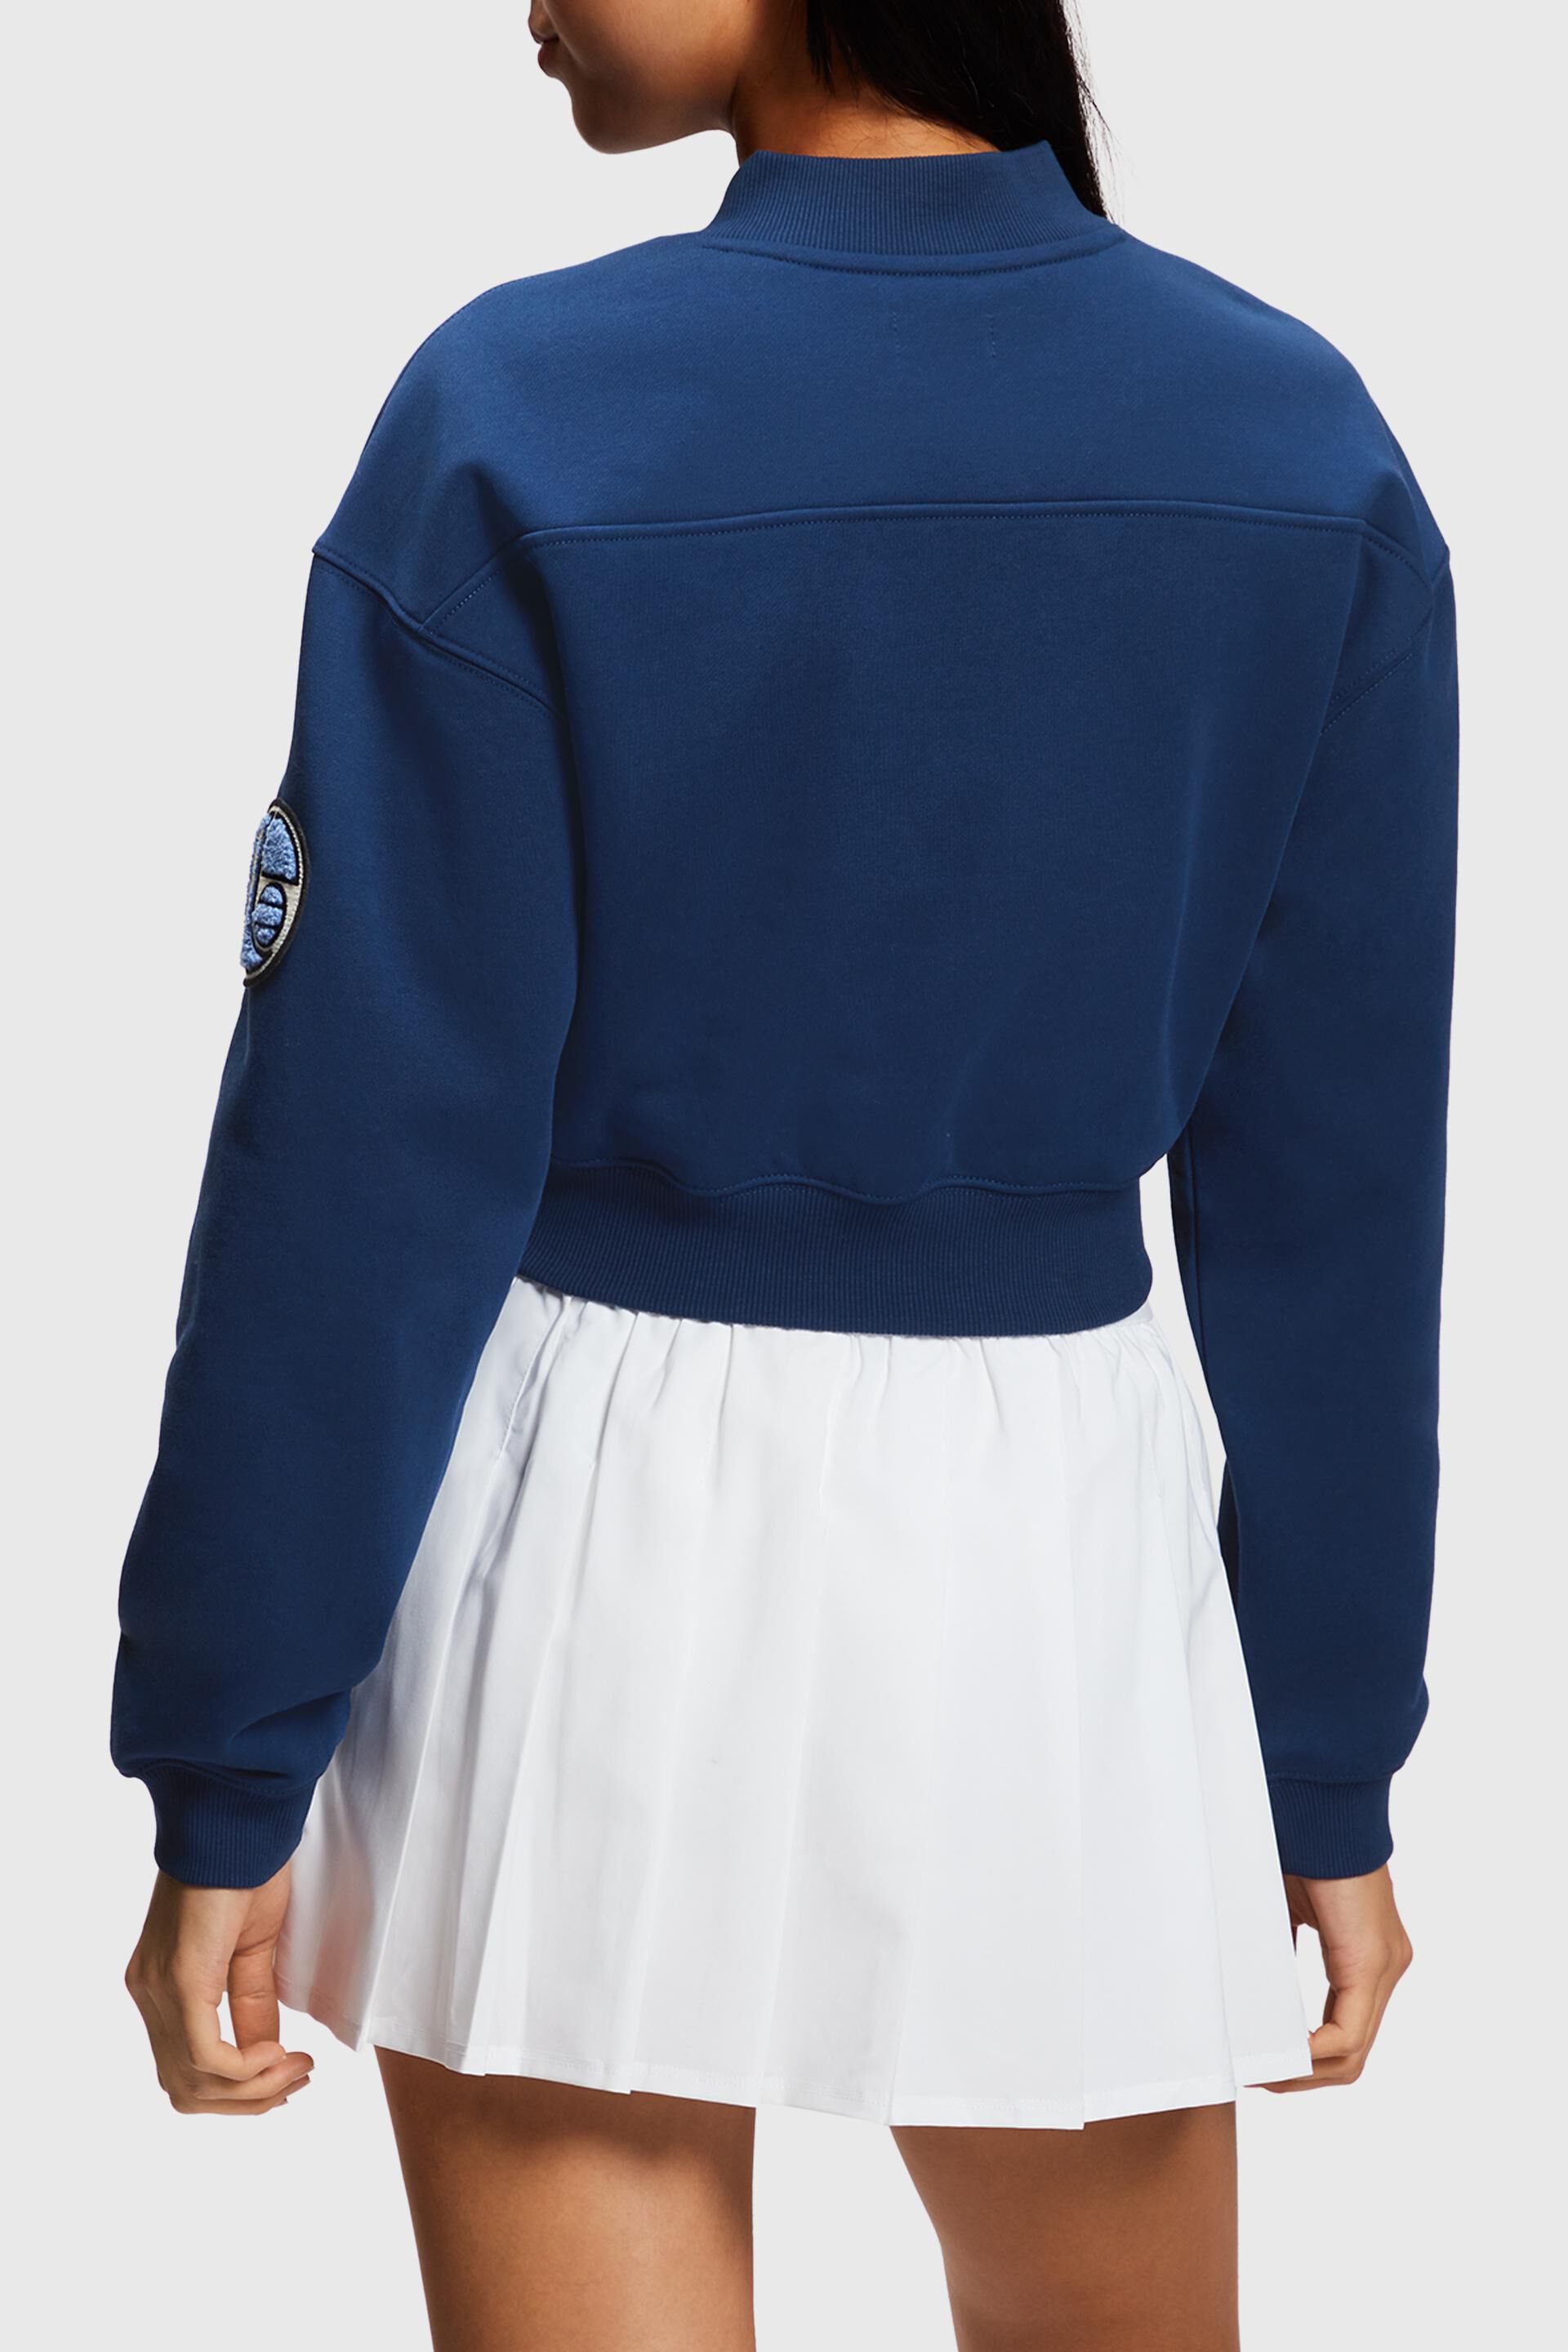 Esprit Damen Kurzes Sweatshirt mit College-Patch